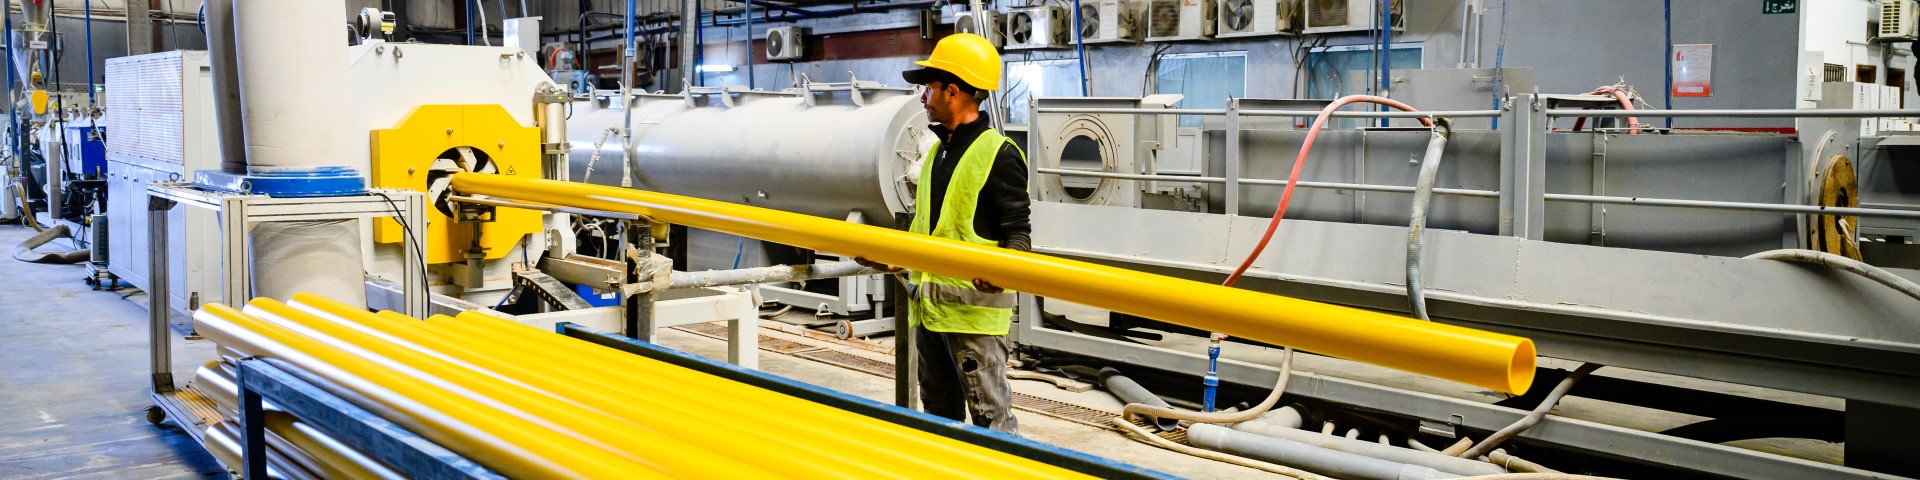 Eine Arbeitskraft bedient eine Maschine in einer Fabrik und handhabt ein großes gelbes Kunststoffrohr.